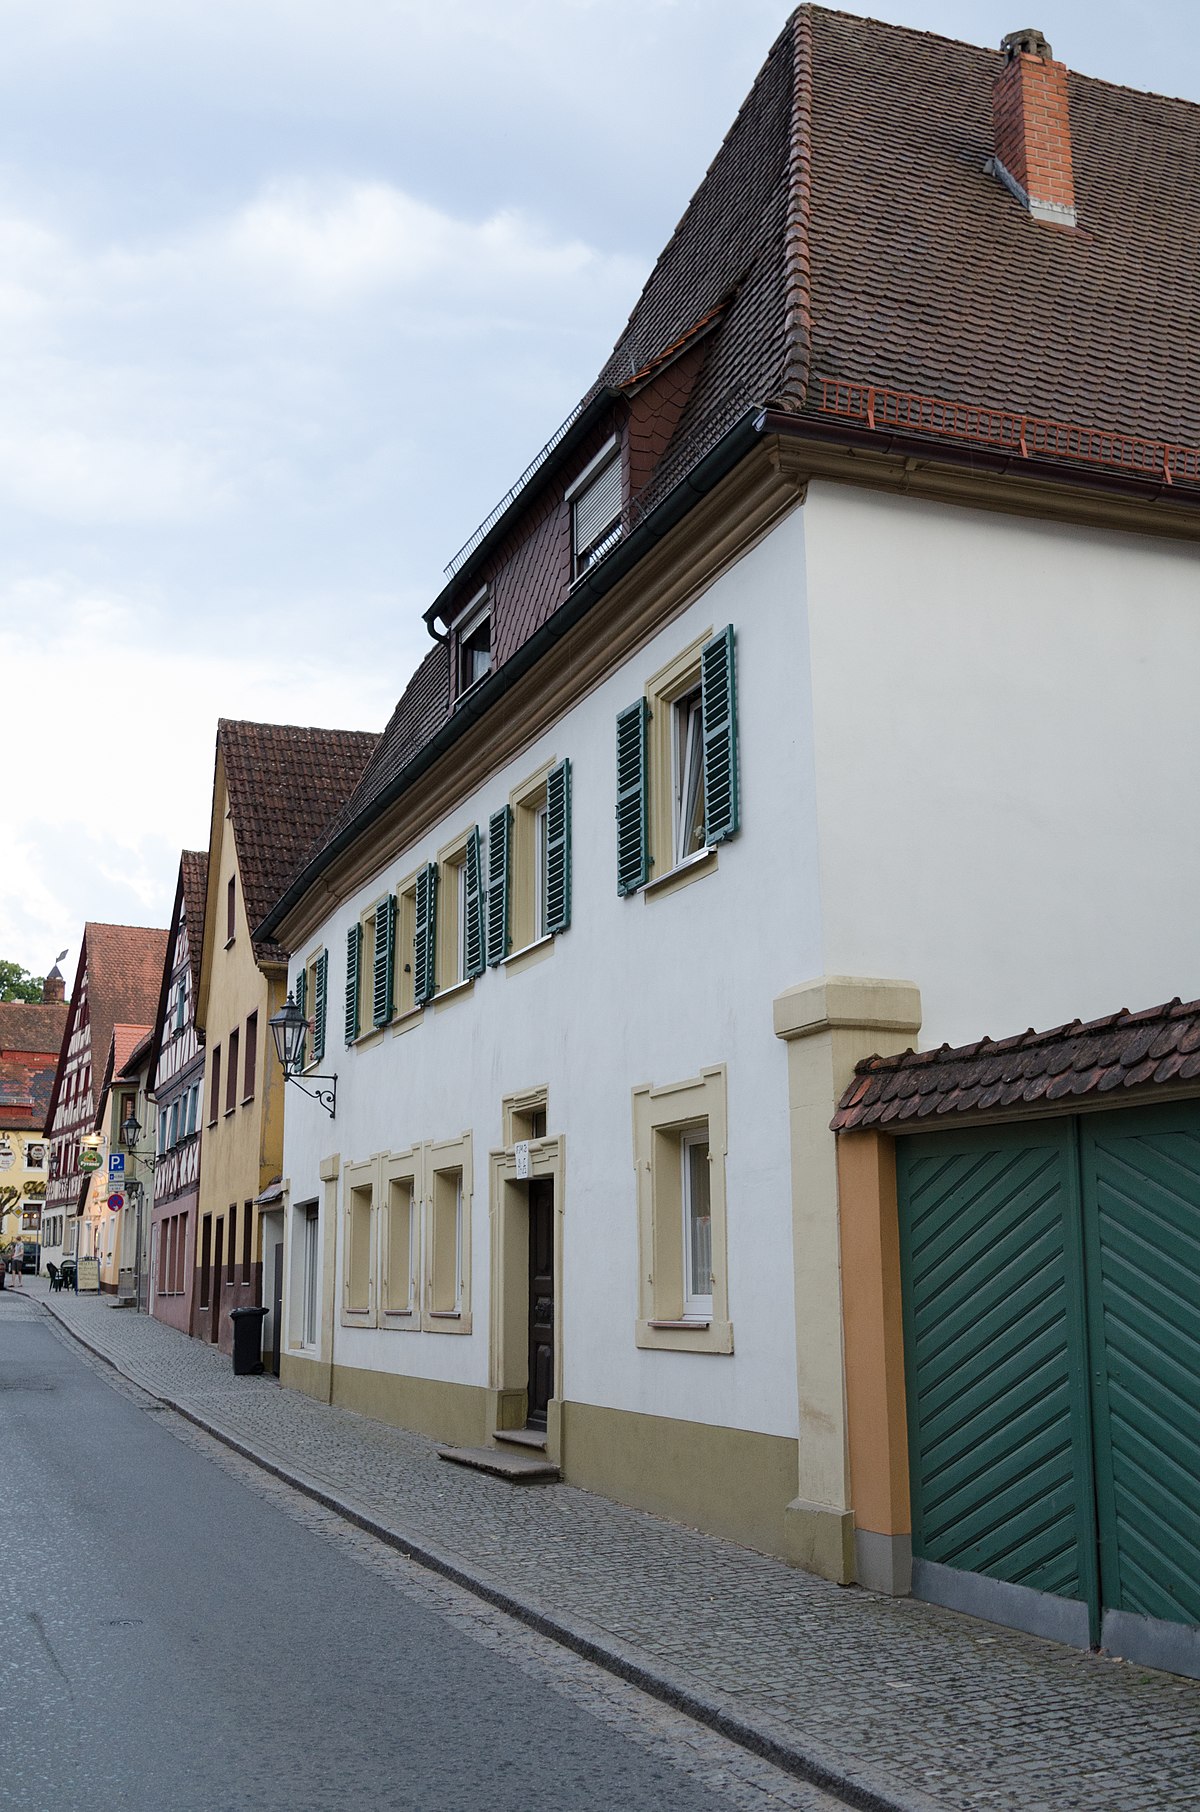 Datei:Emskirchen, Marktstraße 4, 002.jpg – Wikipedia.